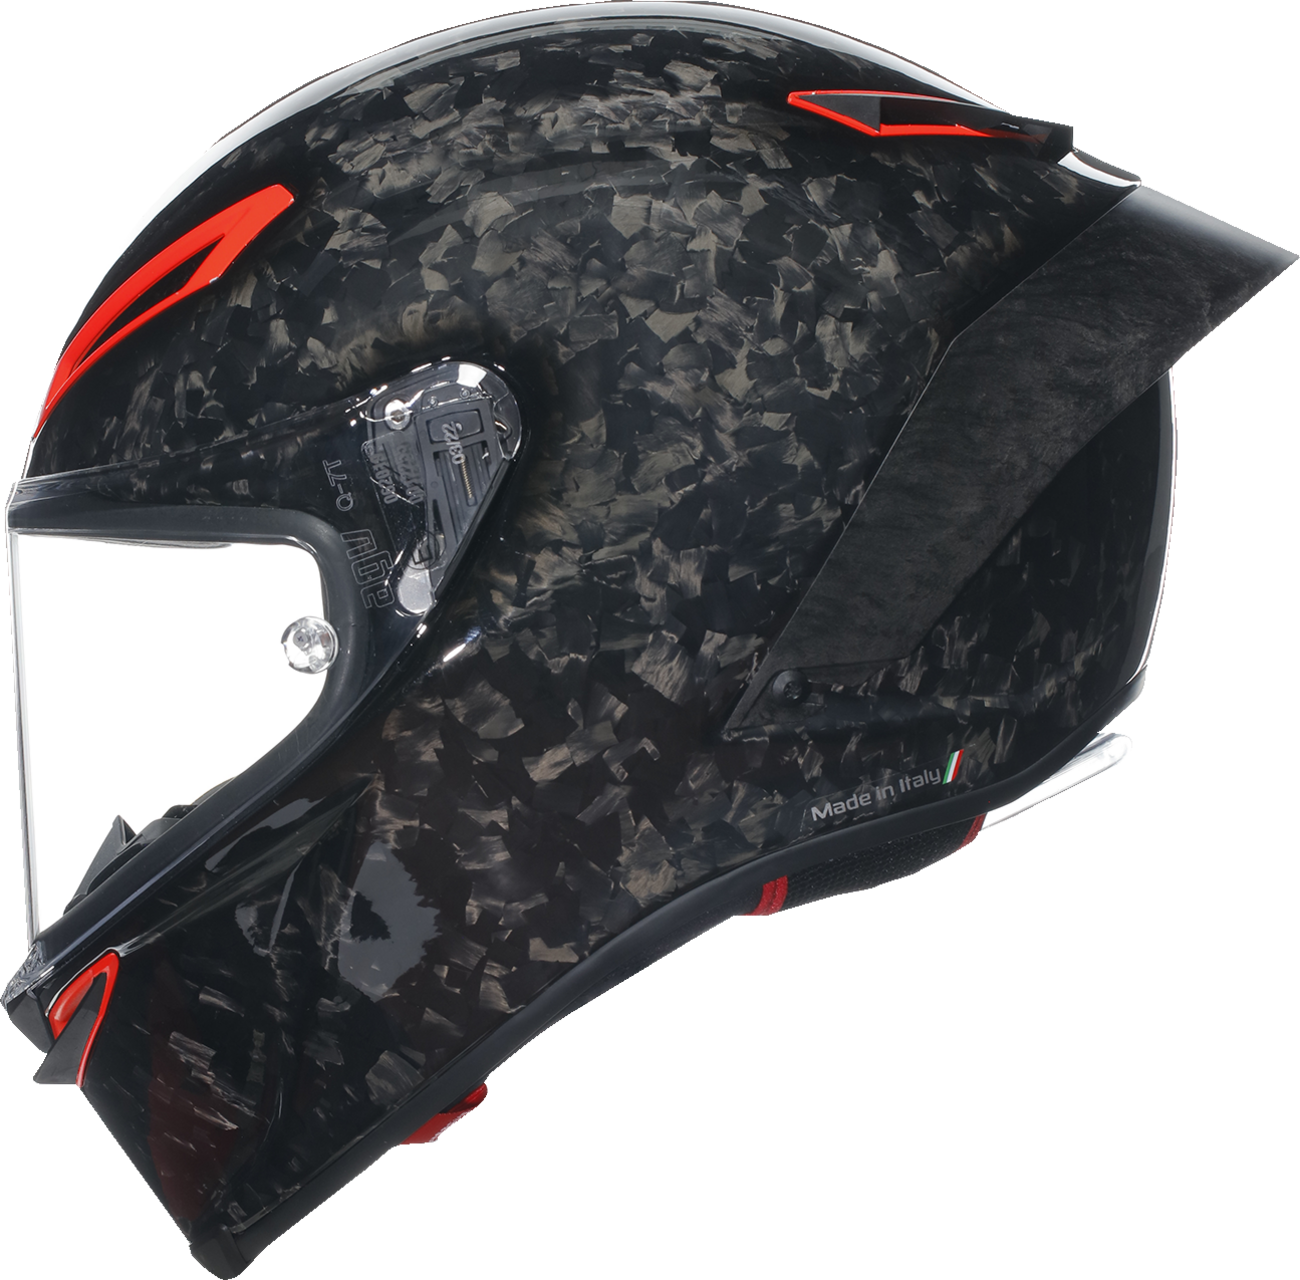 AGV Pista GP RR Helmet - Carbonio Forgiato - Italia - Medium 2118356002003M